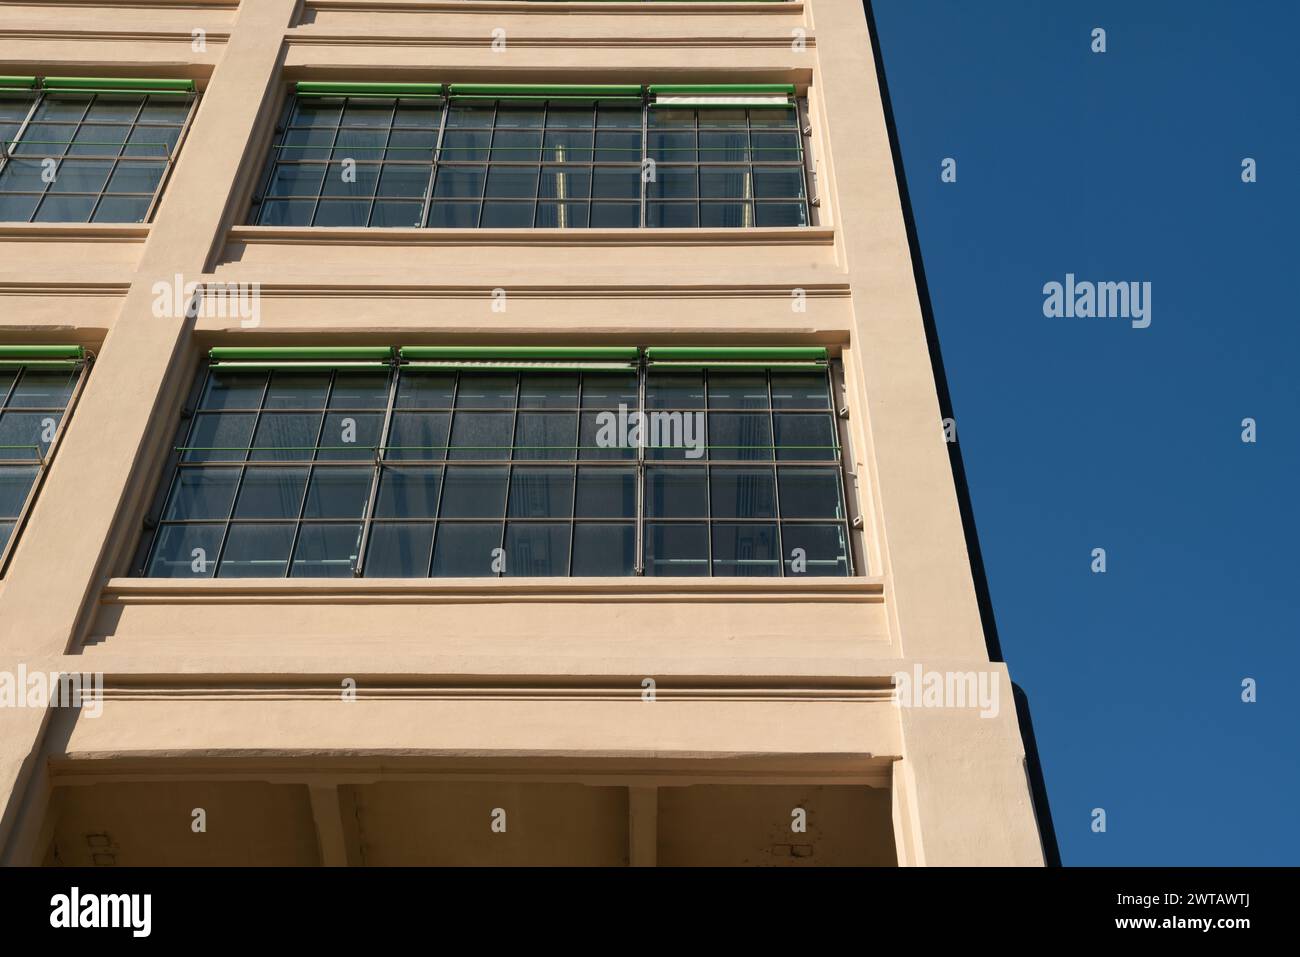 edificio post-industriale riqualificato con spazi multifunzionali, struttura in cemento armato e finestre e tende esterne a doppi vetri. Torino, Foto Stock